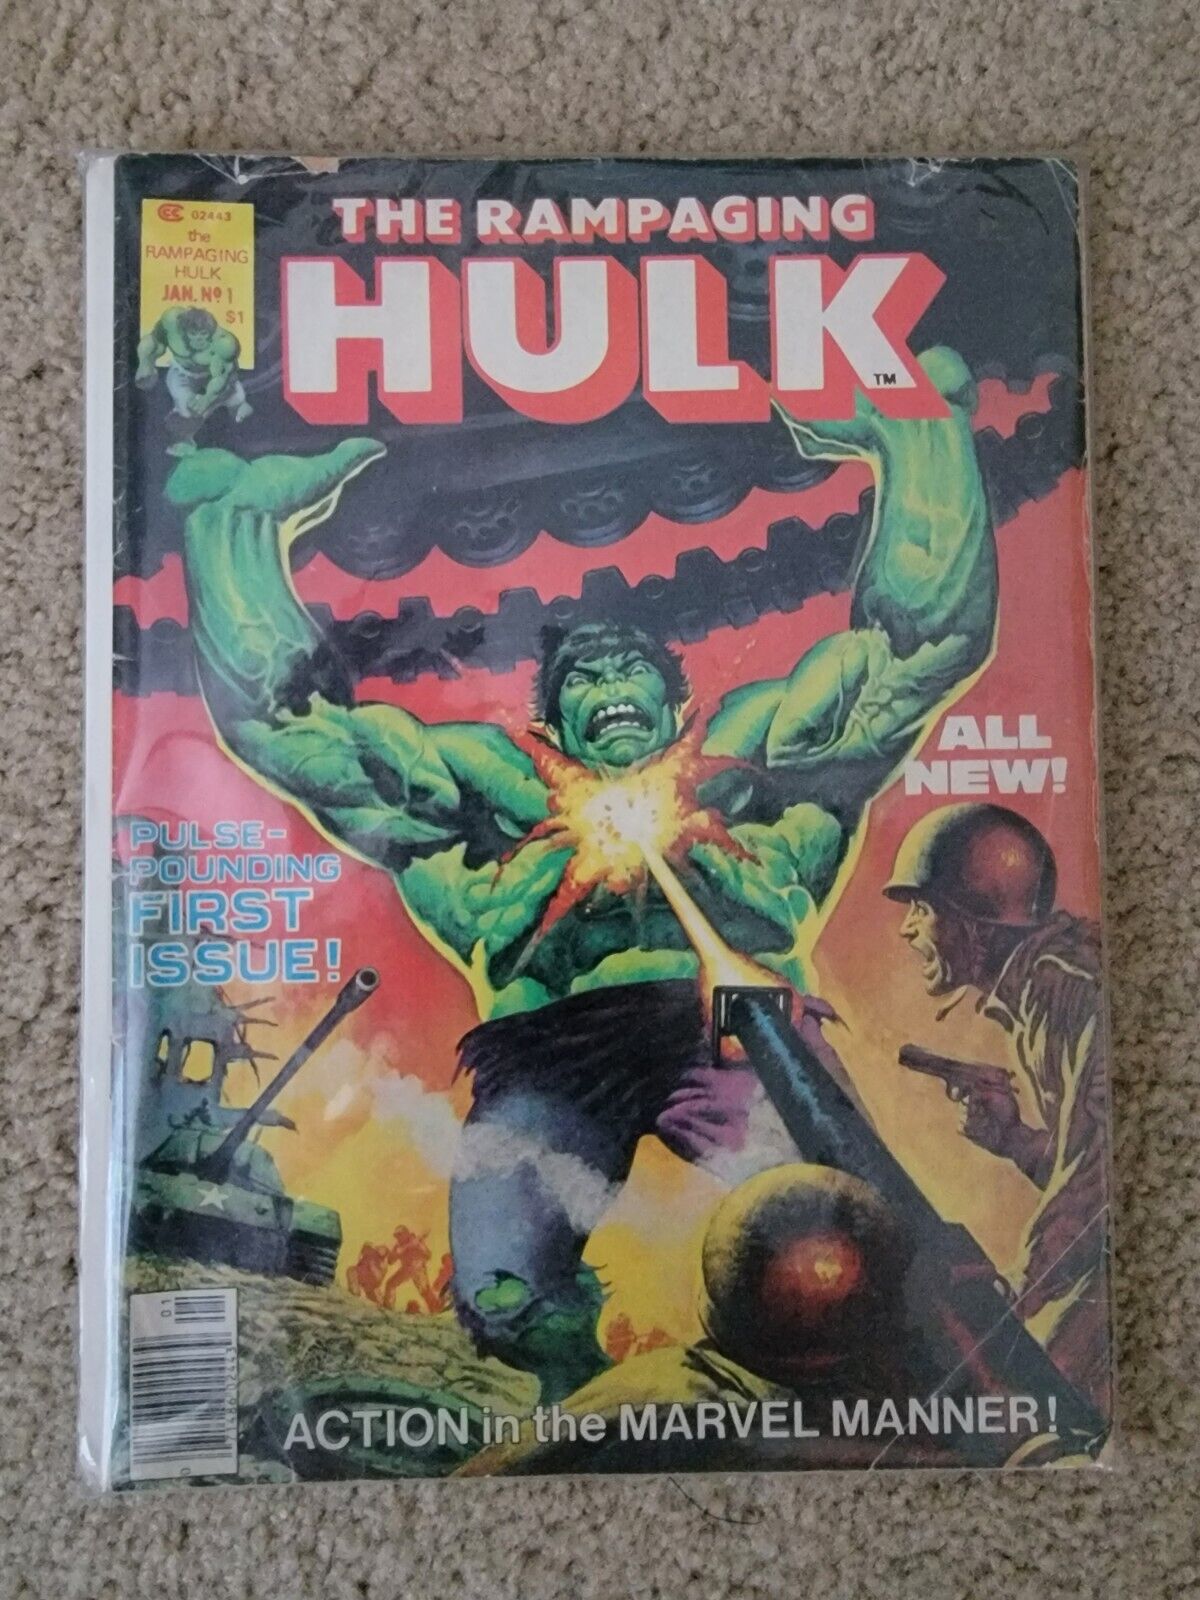 The Rampaging Hulk #1 Origin of Hulk Marvel Magazine Comics 1977 Doug Moench